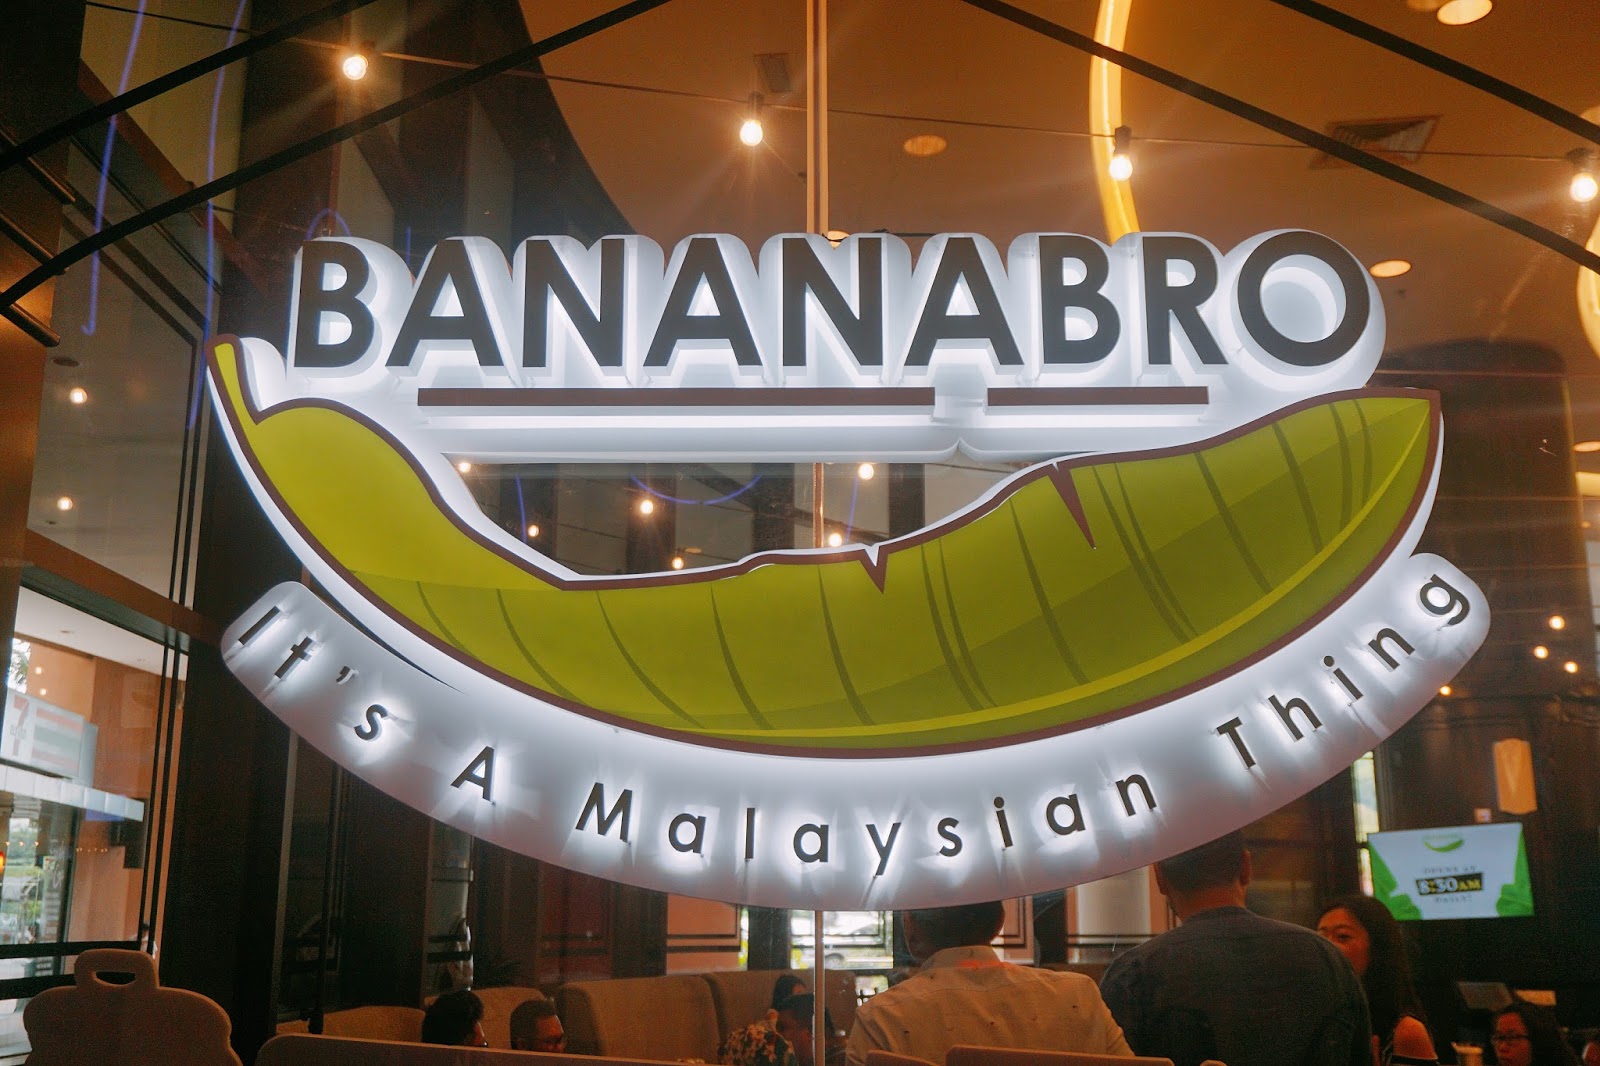 Bananabro